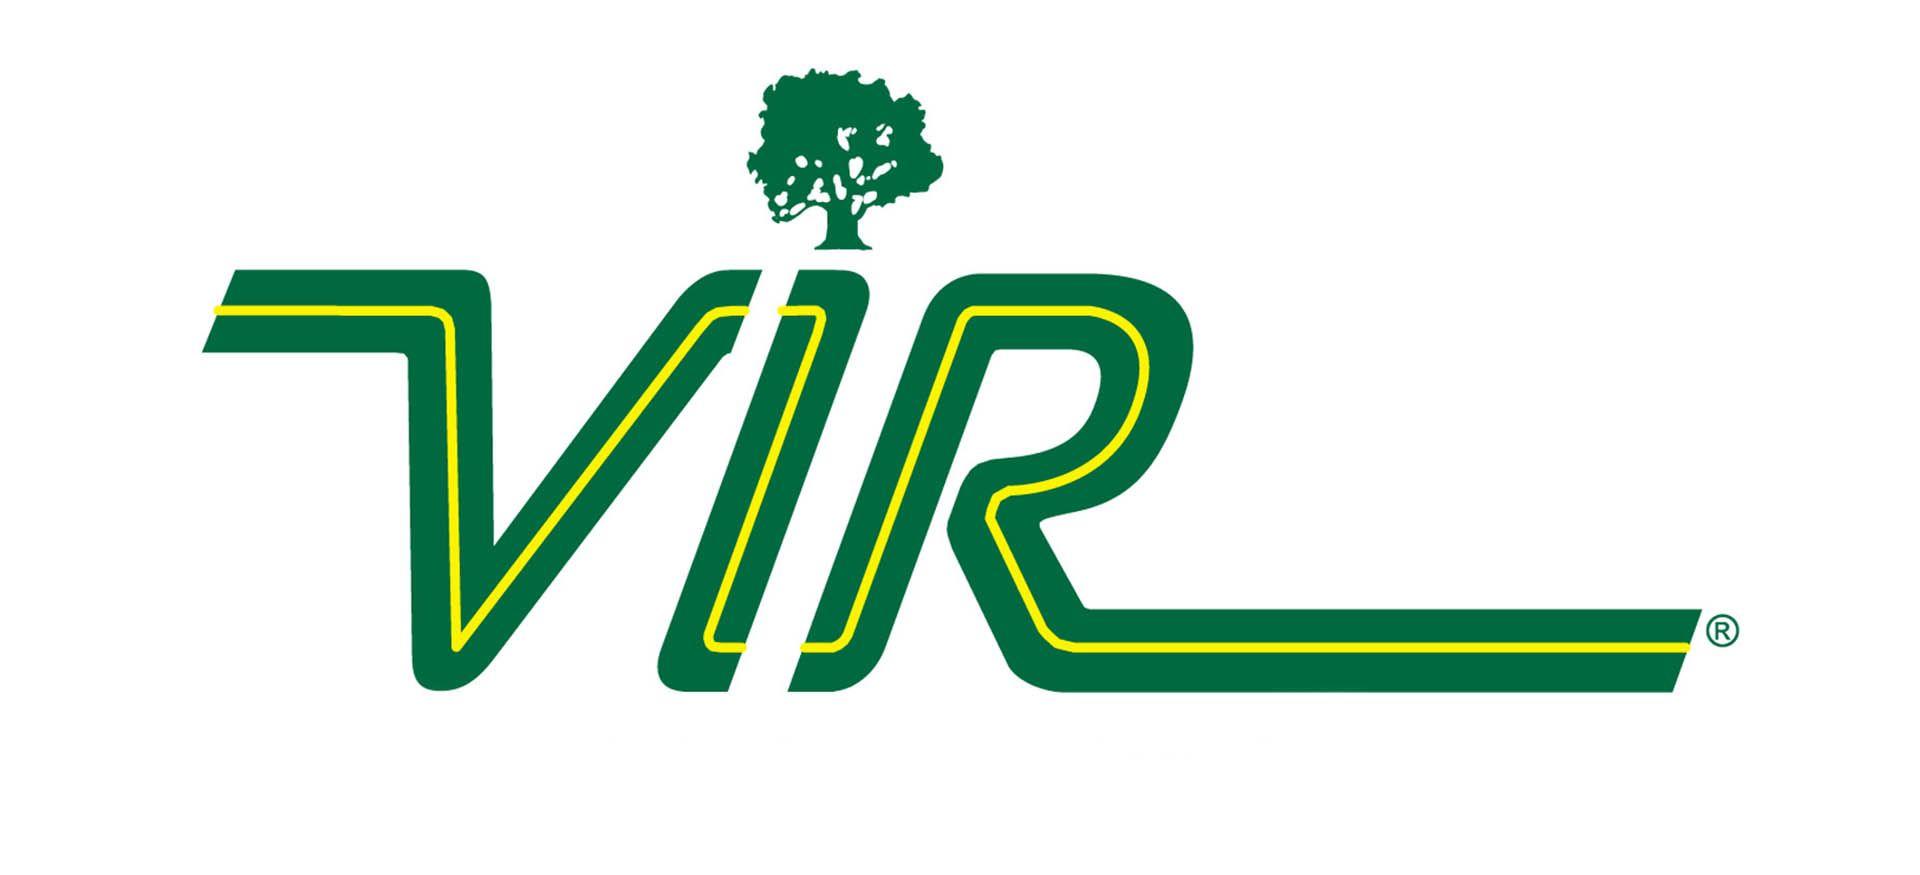 Vir Logo - VIR-logo-Header – dailysportscar.com